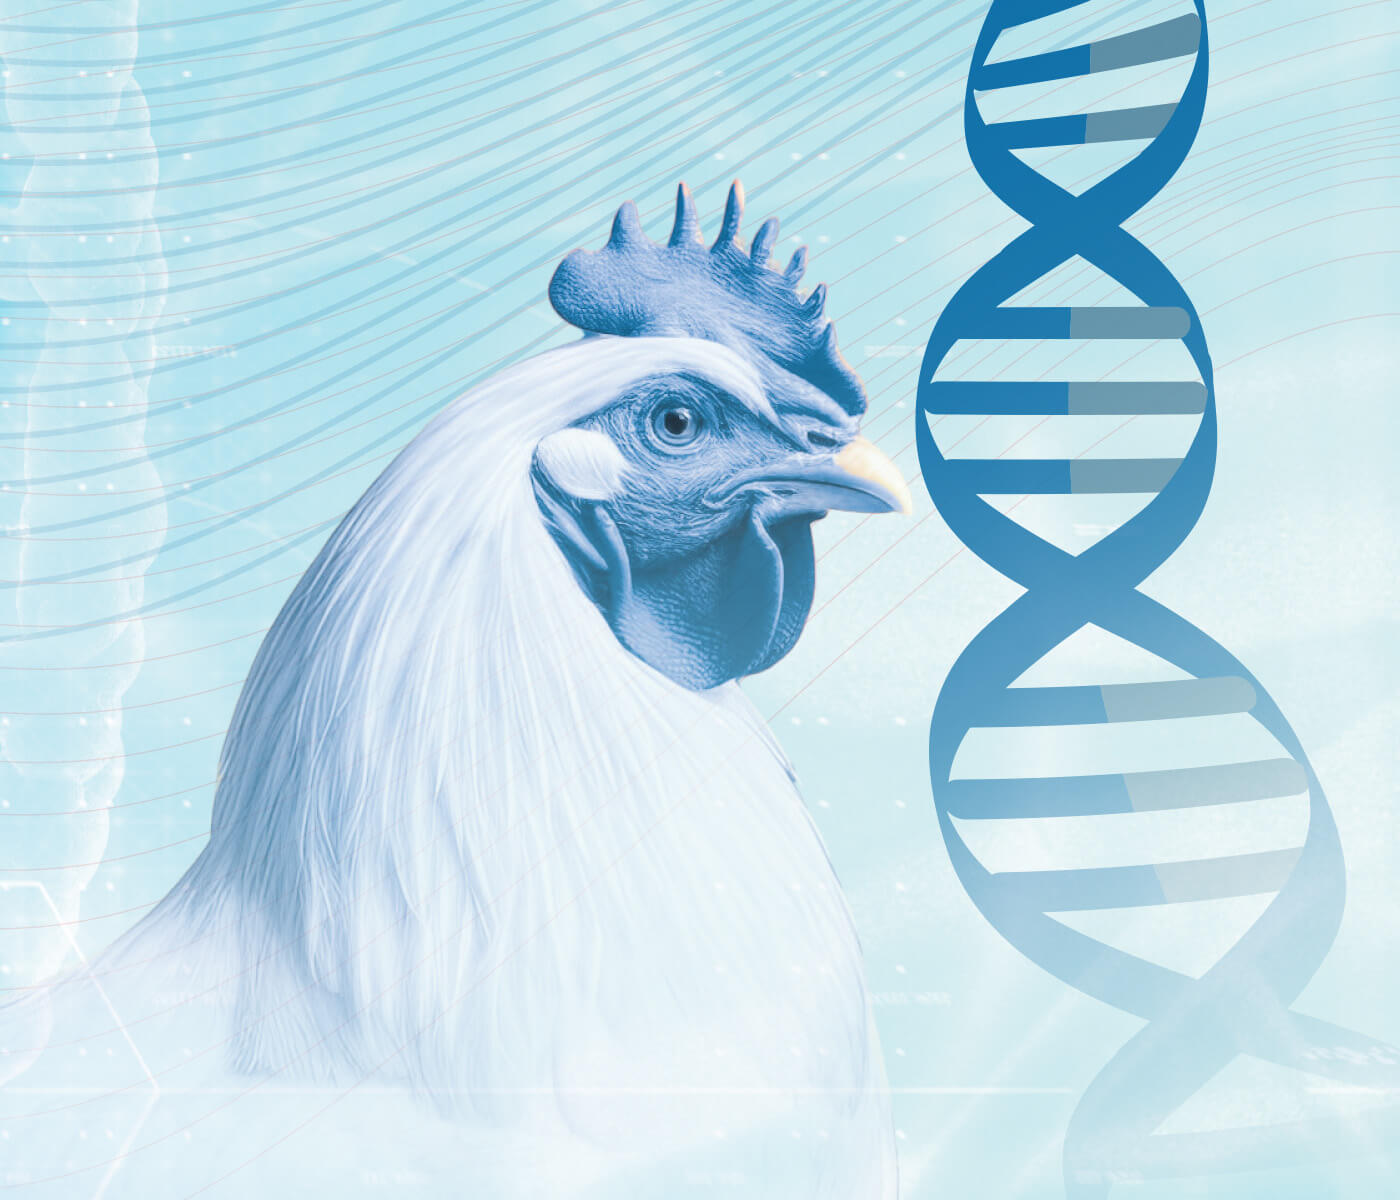 Melhoramento genético garante uma produção futura mais sustentável: seleção genética...